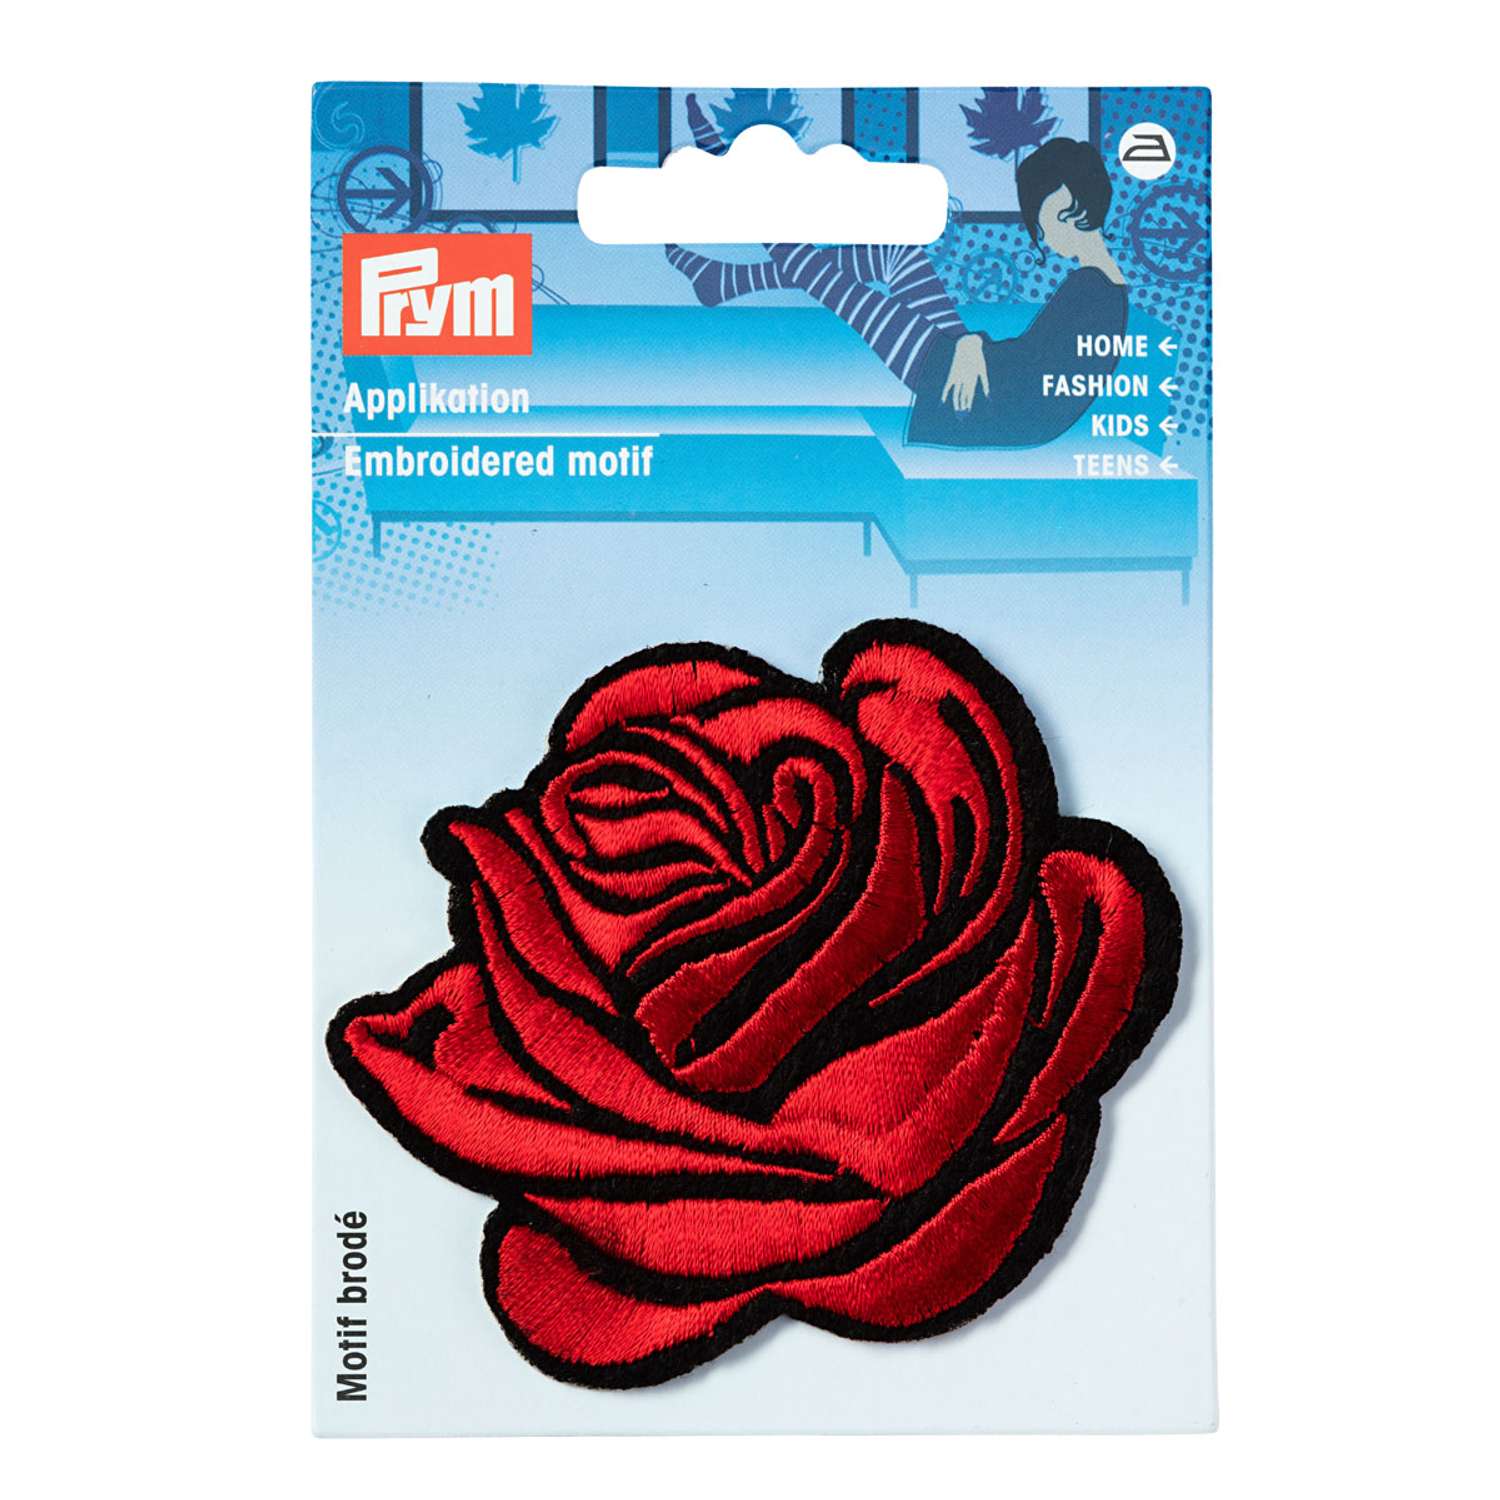 Термоаппликация Prym нашивка Роза 7х6.5 см для ремонта и украшения одежды 926652 - фото 9